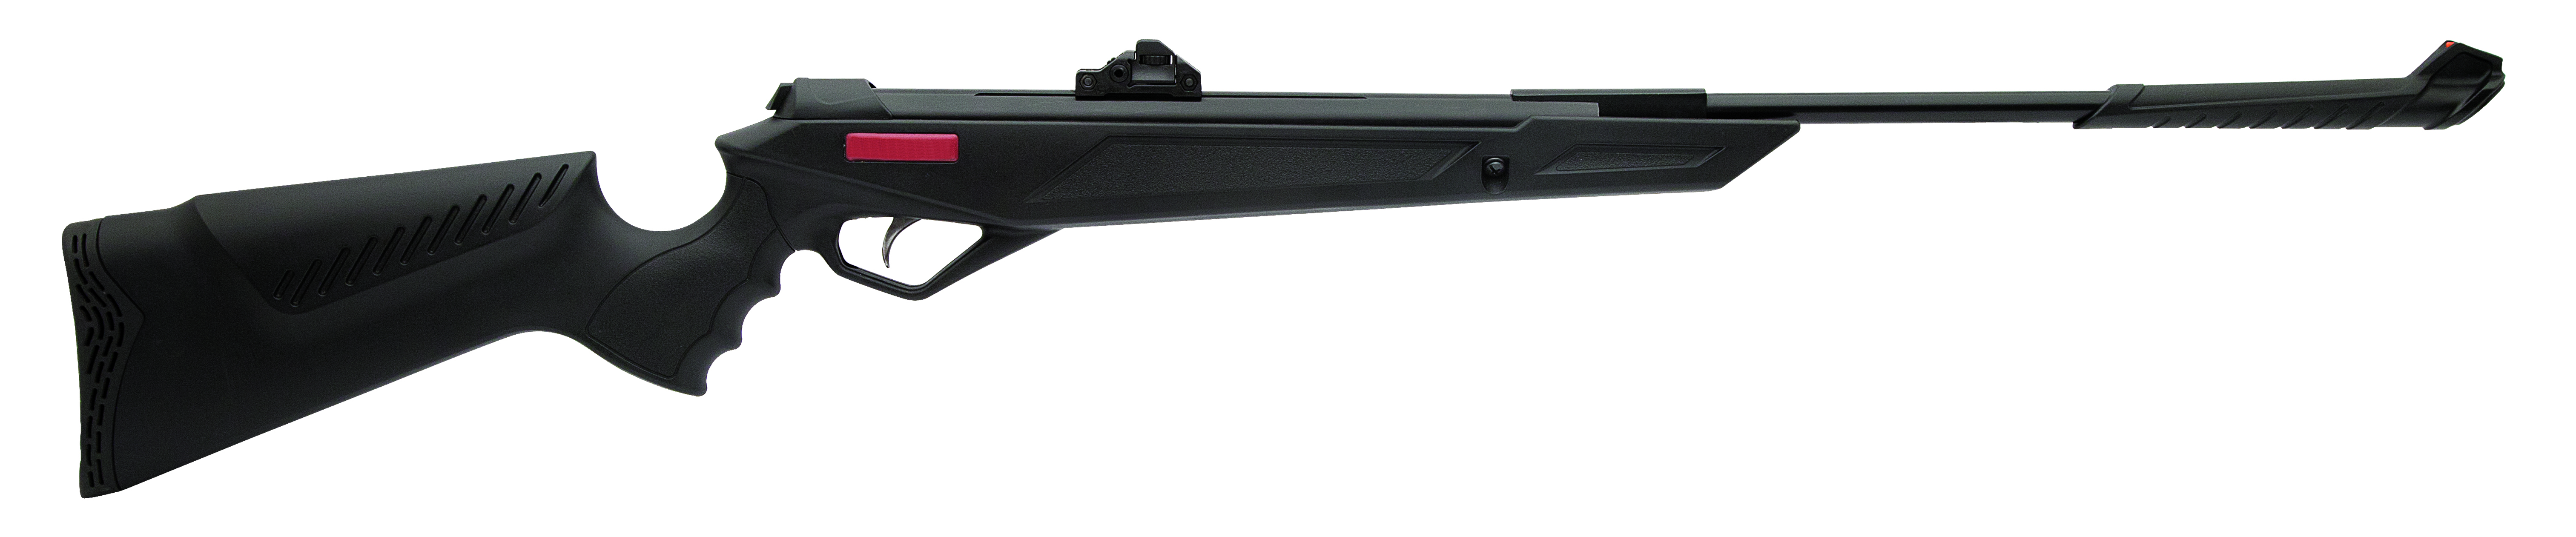 Sh-504 Pcp Air Rifle